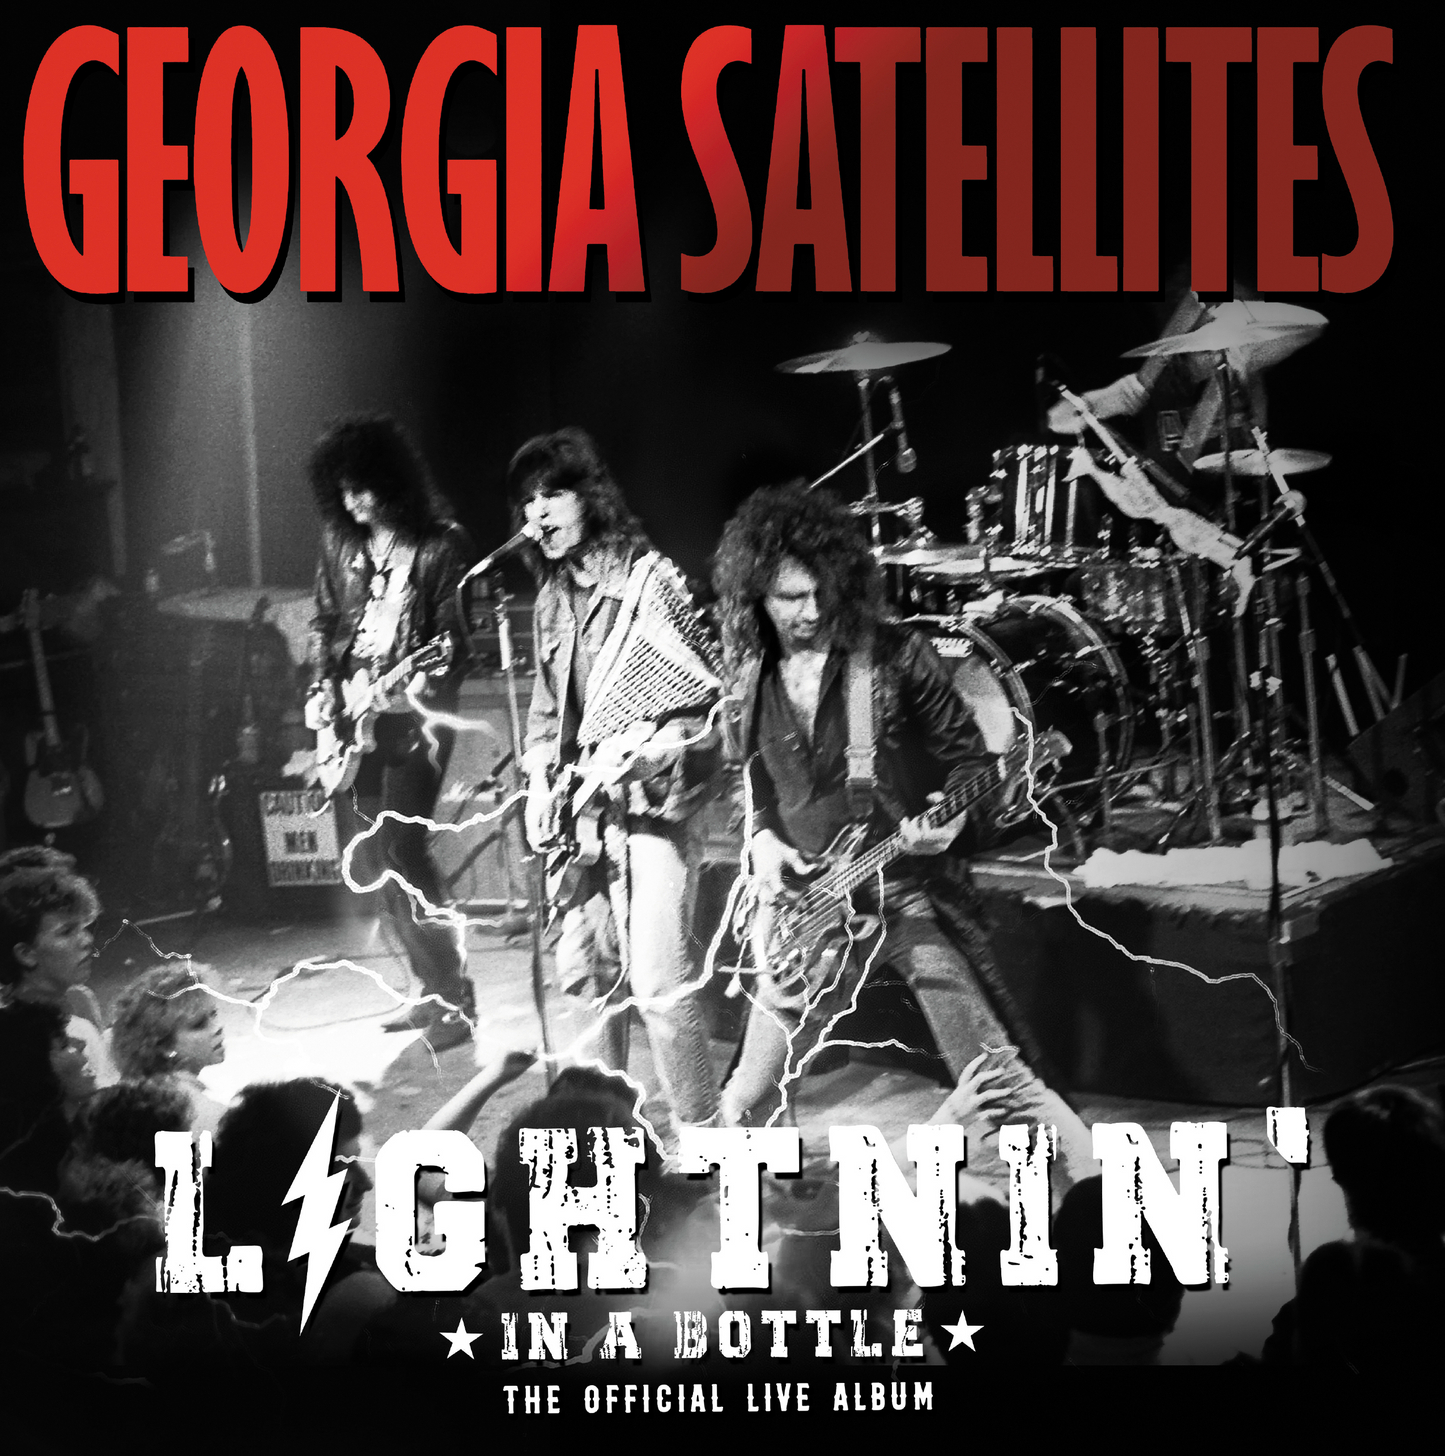 The Georgia Satellites: Lightnin' in a Bottle